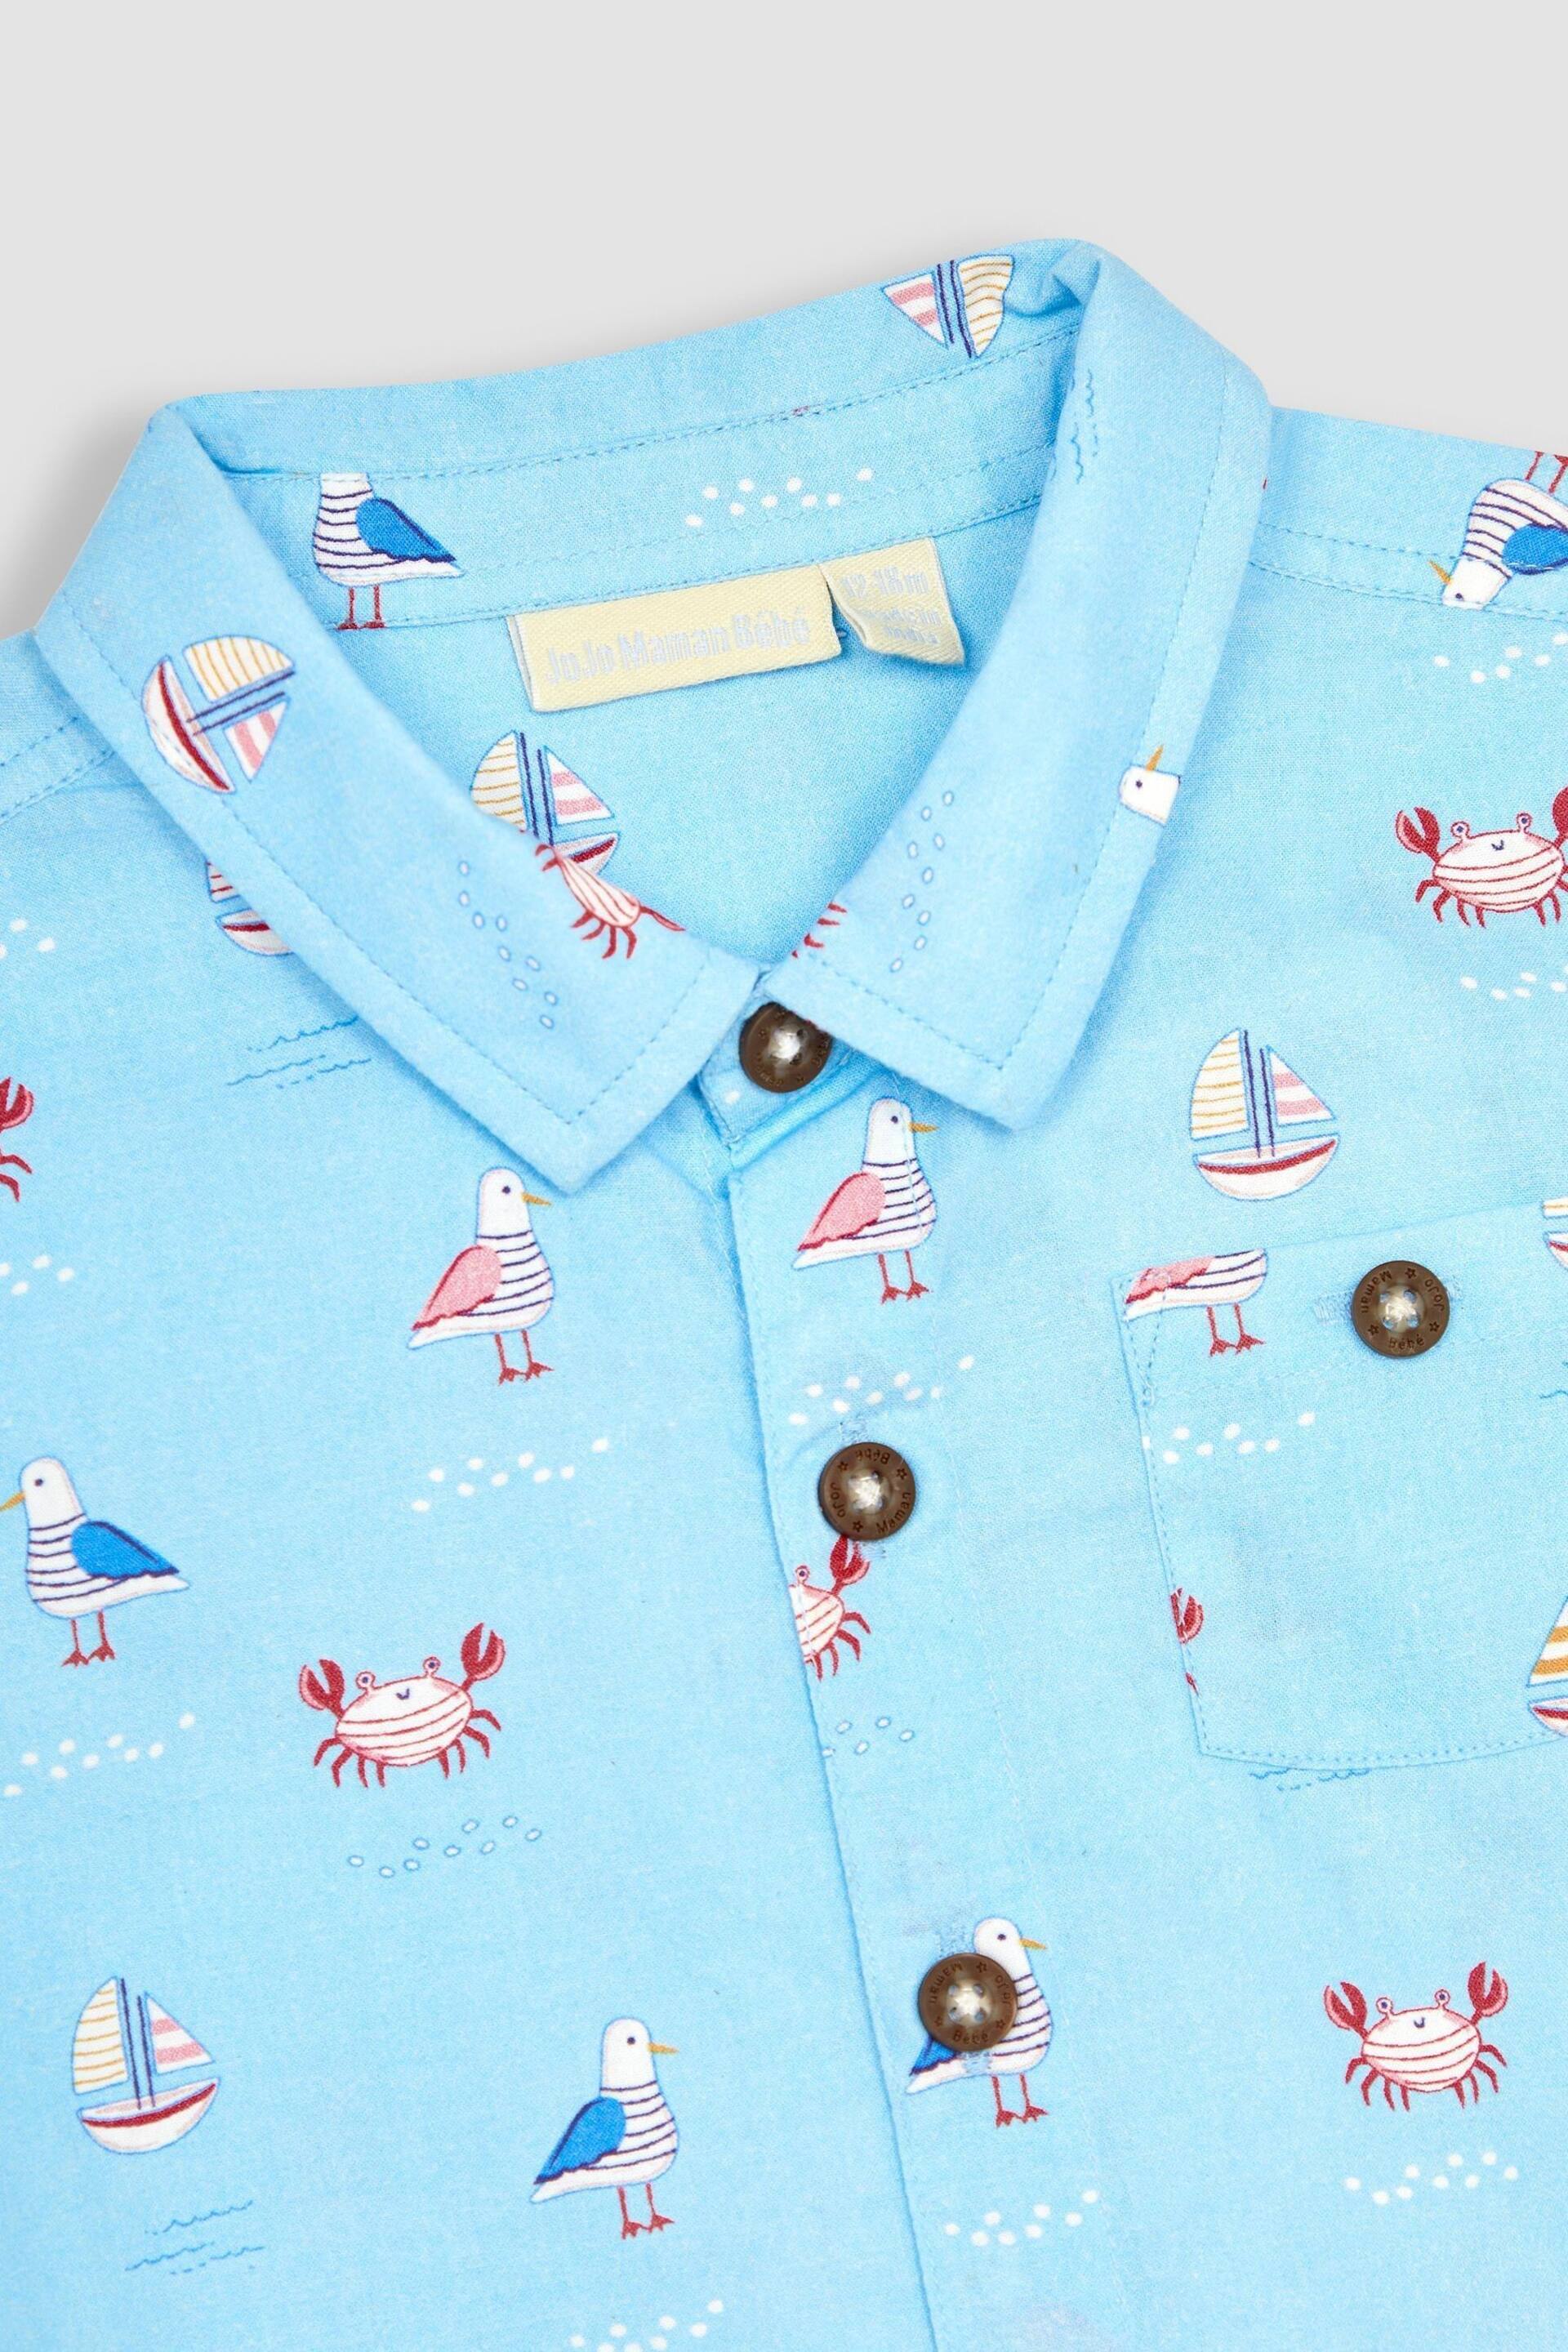 JoJo Maman Bébé Blue Nautical Printed Shirt & Shorts Set - Image 6 of 6